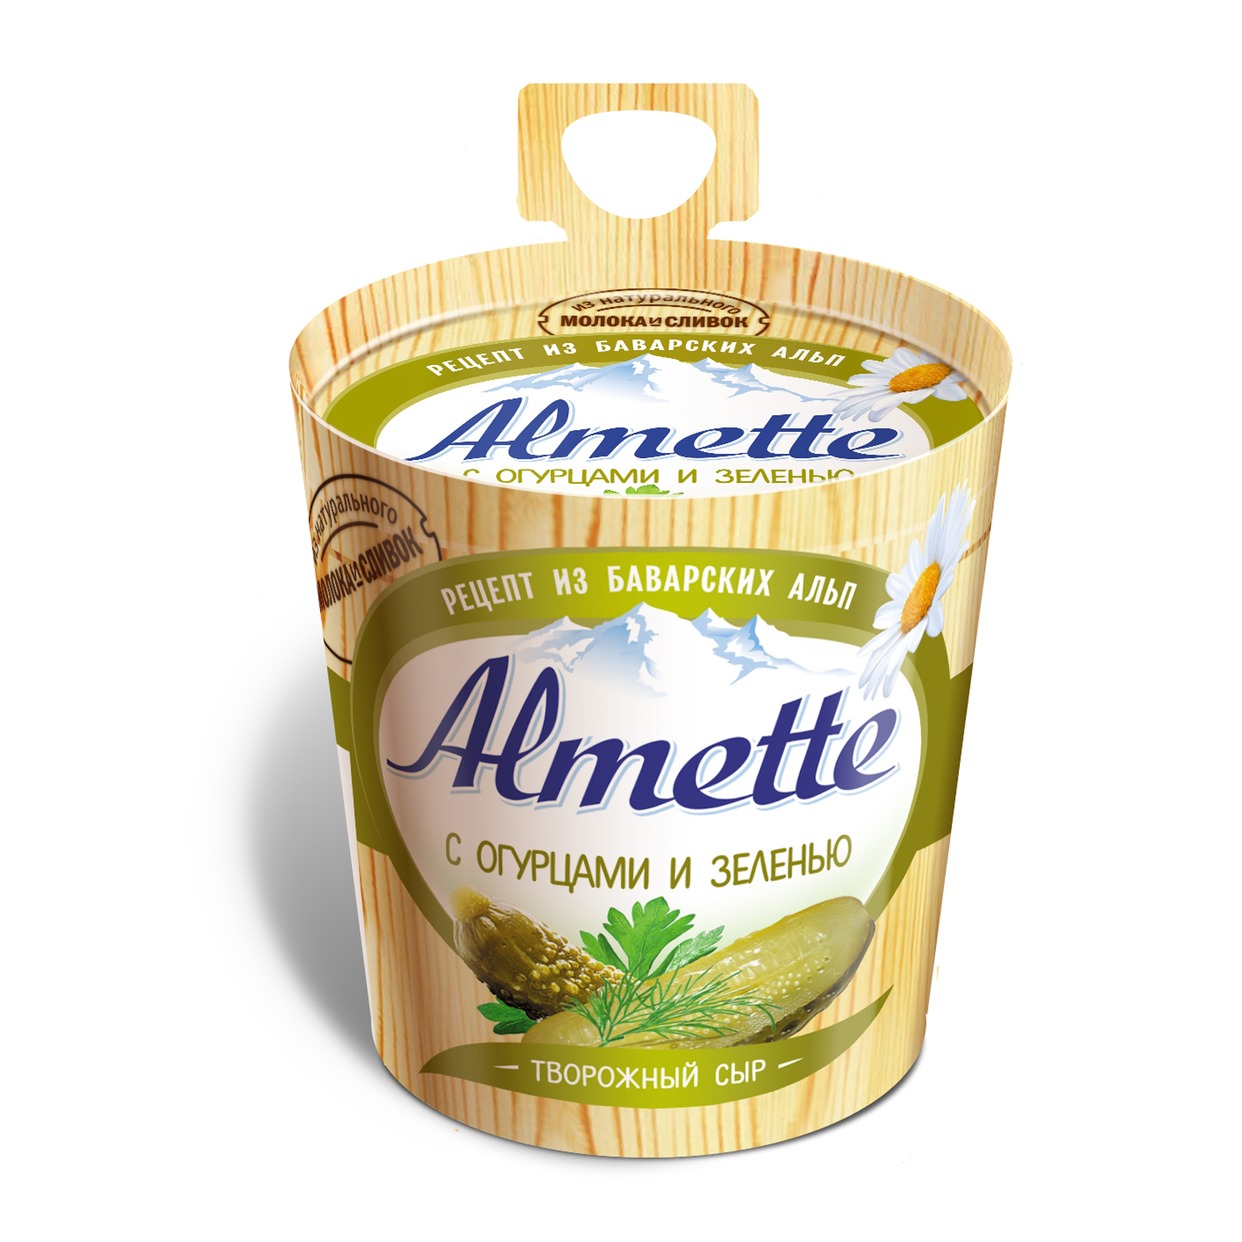 Сыр творожный Almette с огурцами и зеленью 60% 150г по акции в Пятерочке